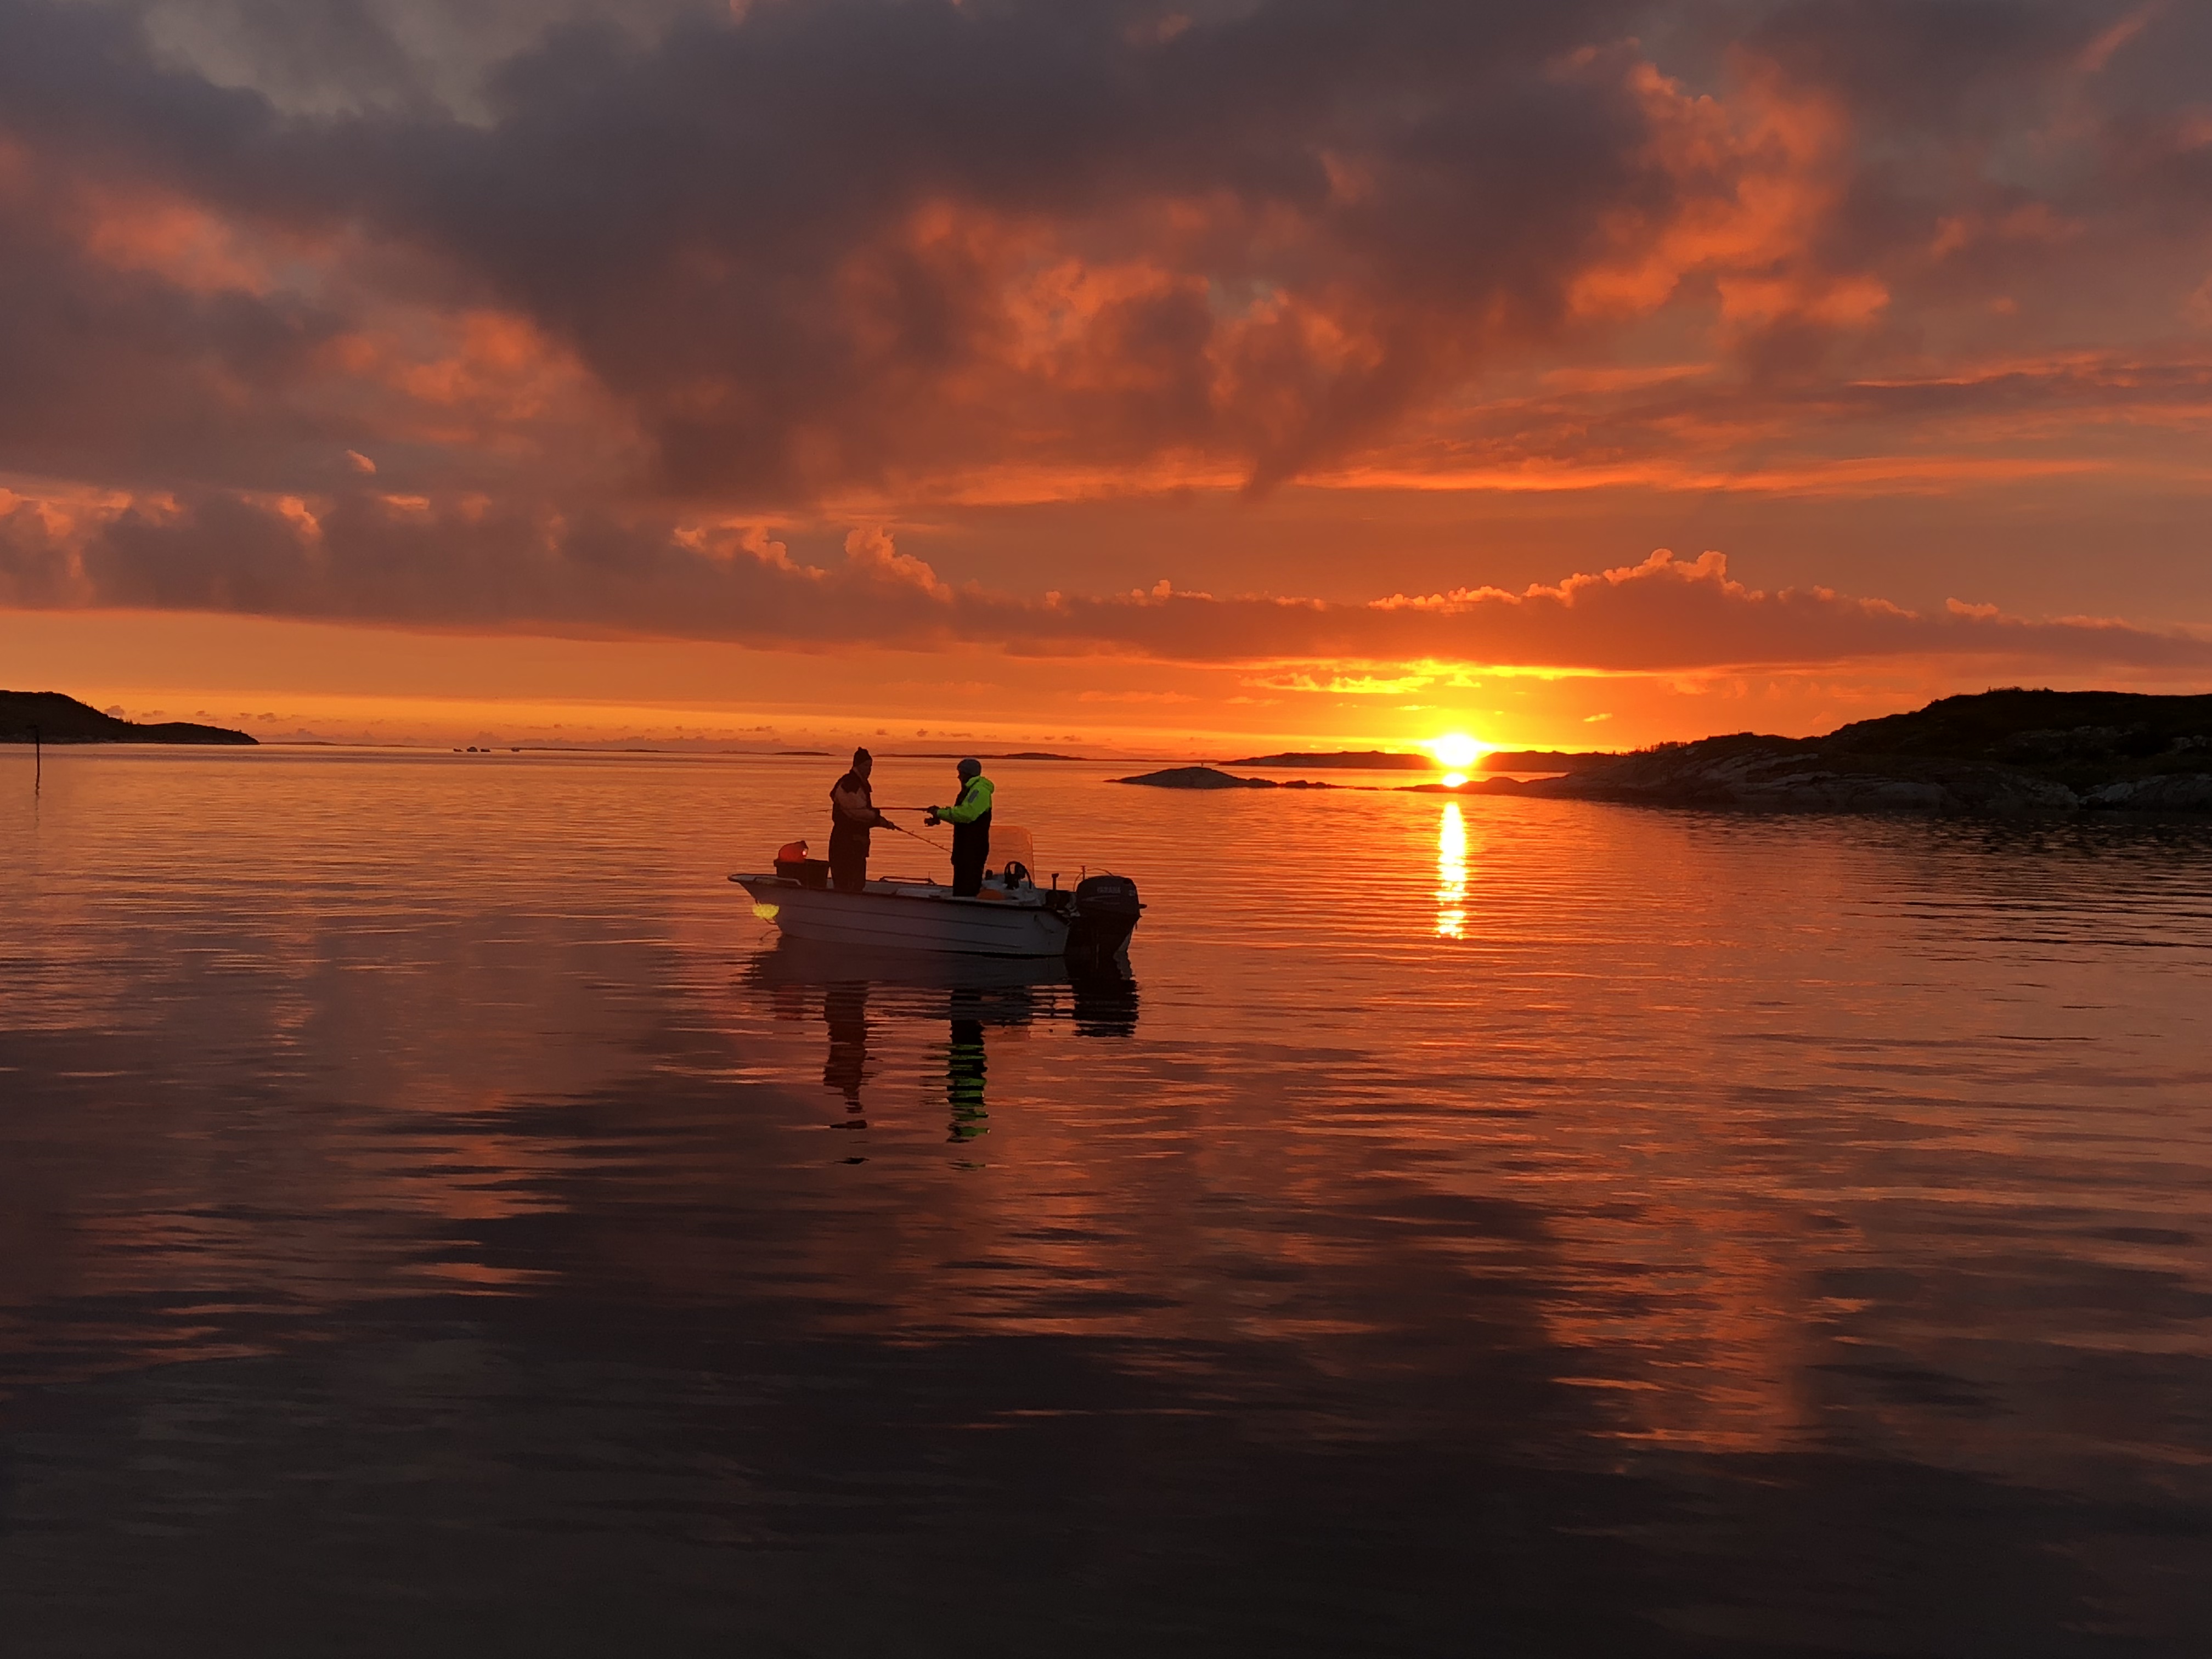 Fiskere i solnedgang. Tatt på Herøy, utenfor Øksningsbrua